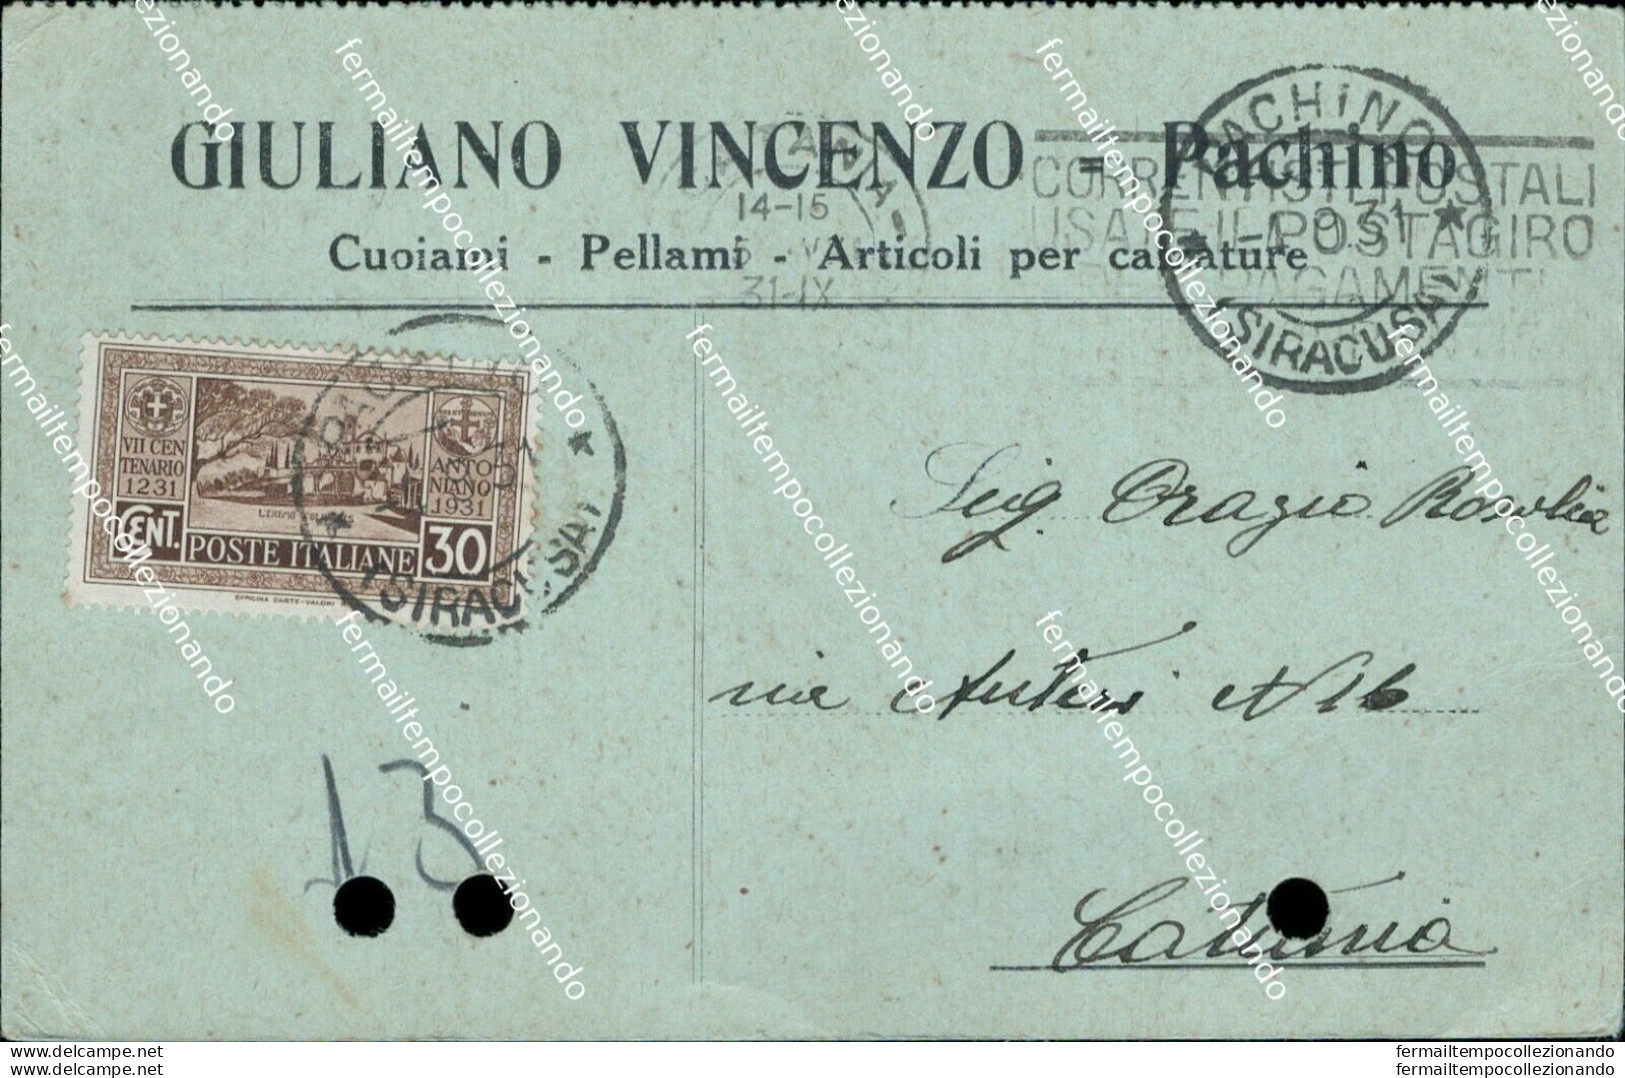 Bm519 Cartolina Commerciale Pachino Giuliano Vincenzo Fori D'archivio Siracusa - Siracusa